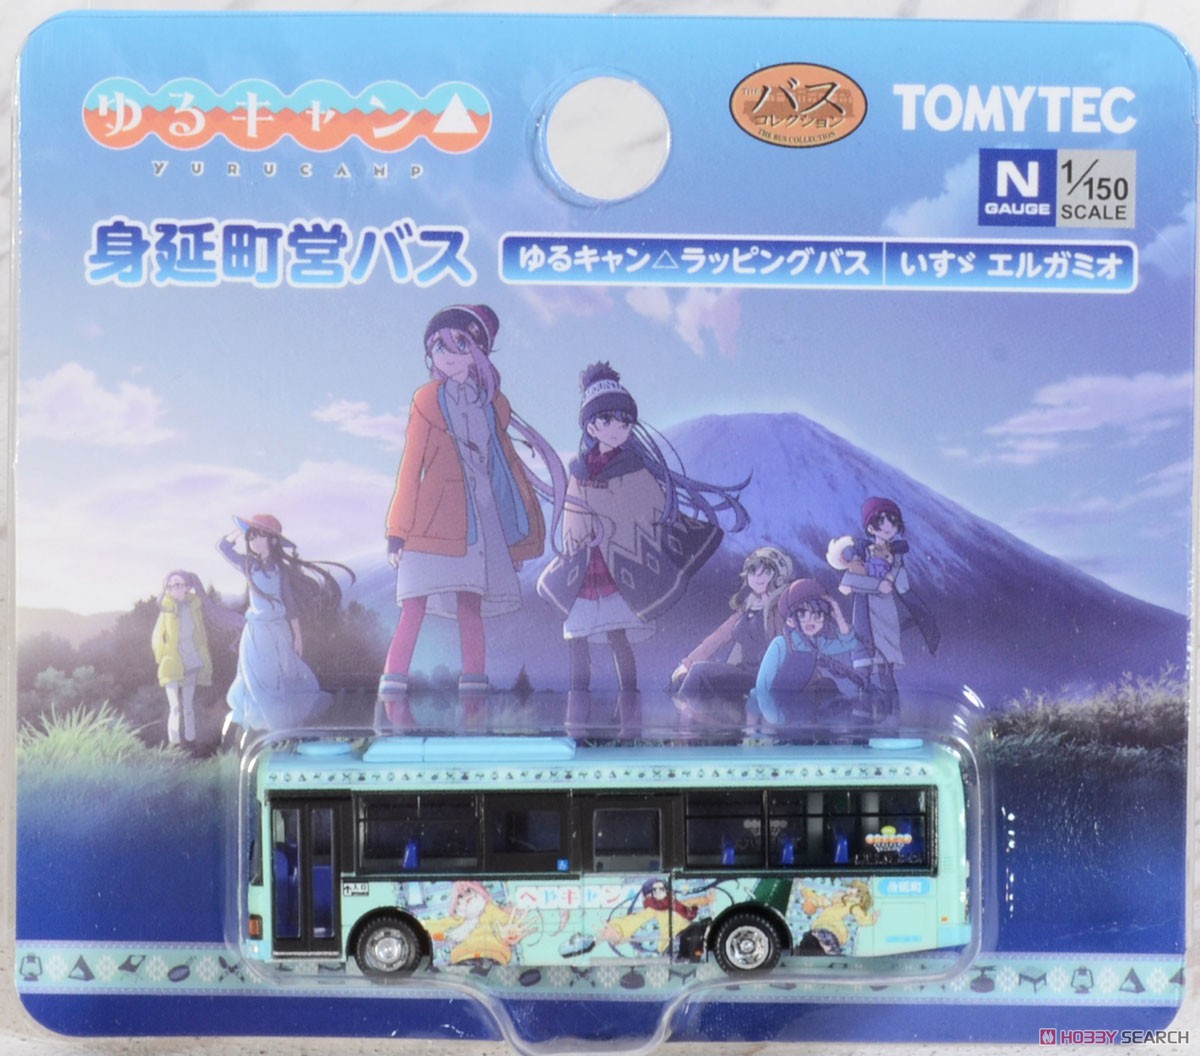 ザ・バスコレクション 身延町営バス ゆるキャン△ラッピングバス (いすゞ エルガミオ) (鉄道模型) パッケージ1